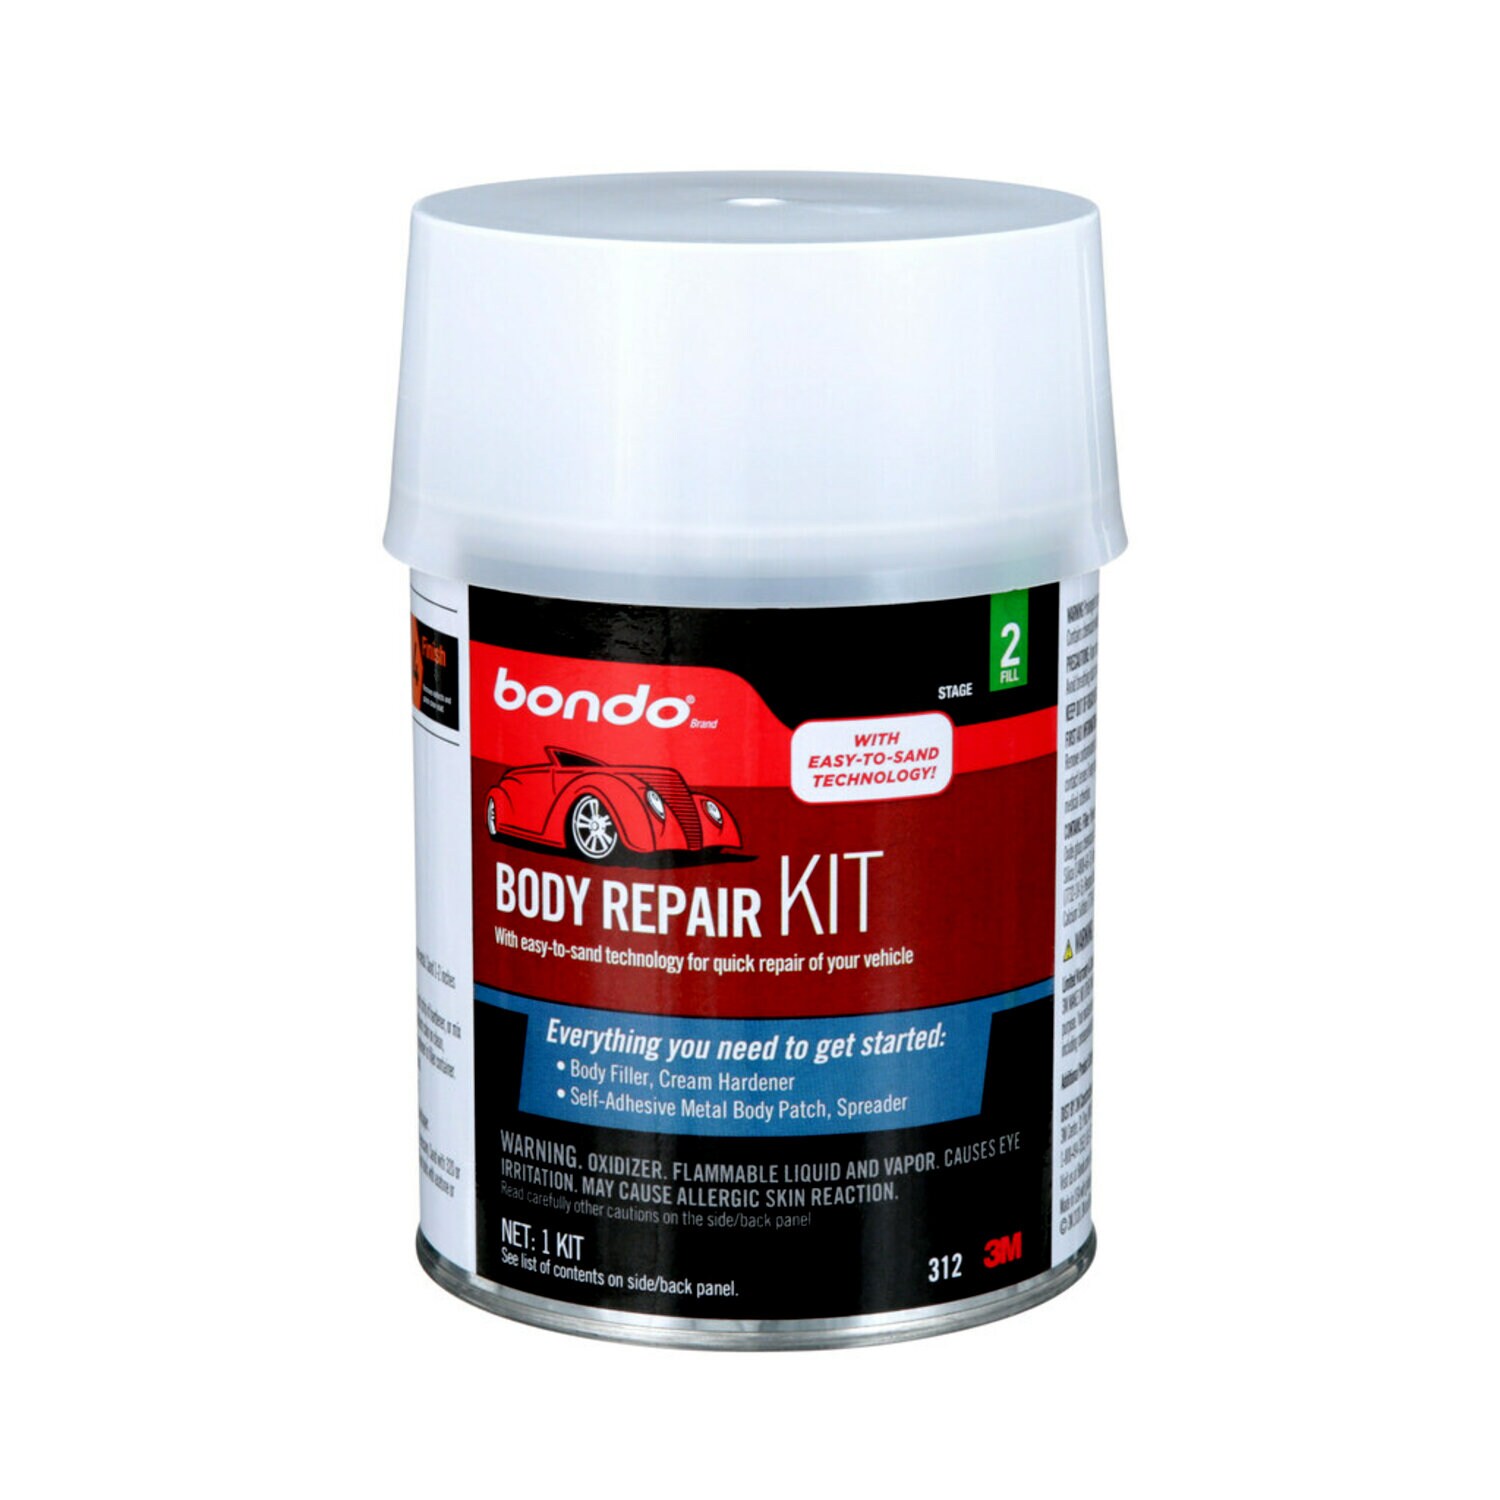 7010328125 - Bondo Body Repair Kit, 00312